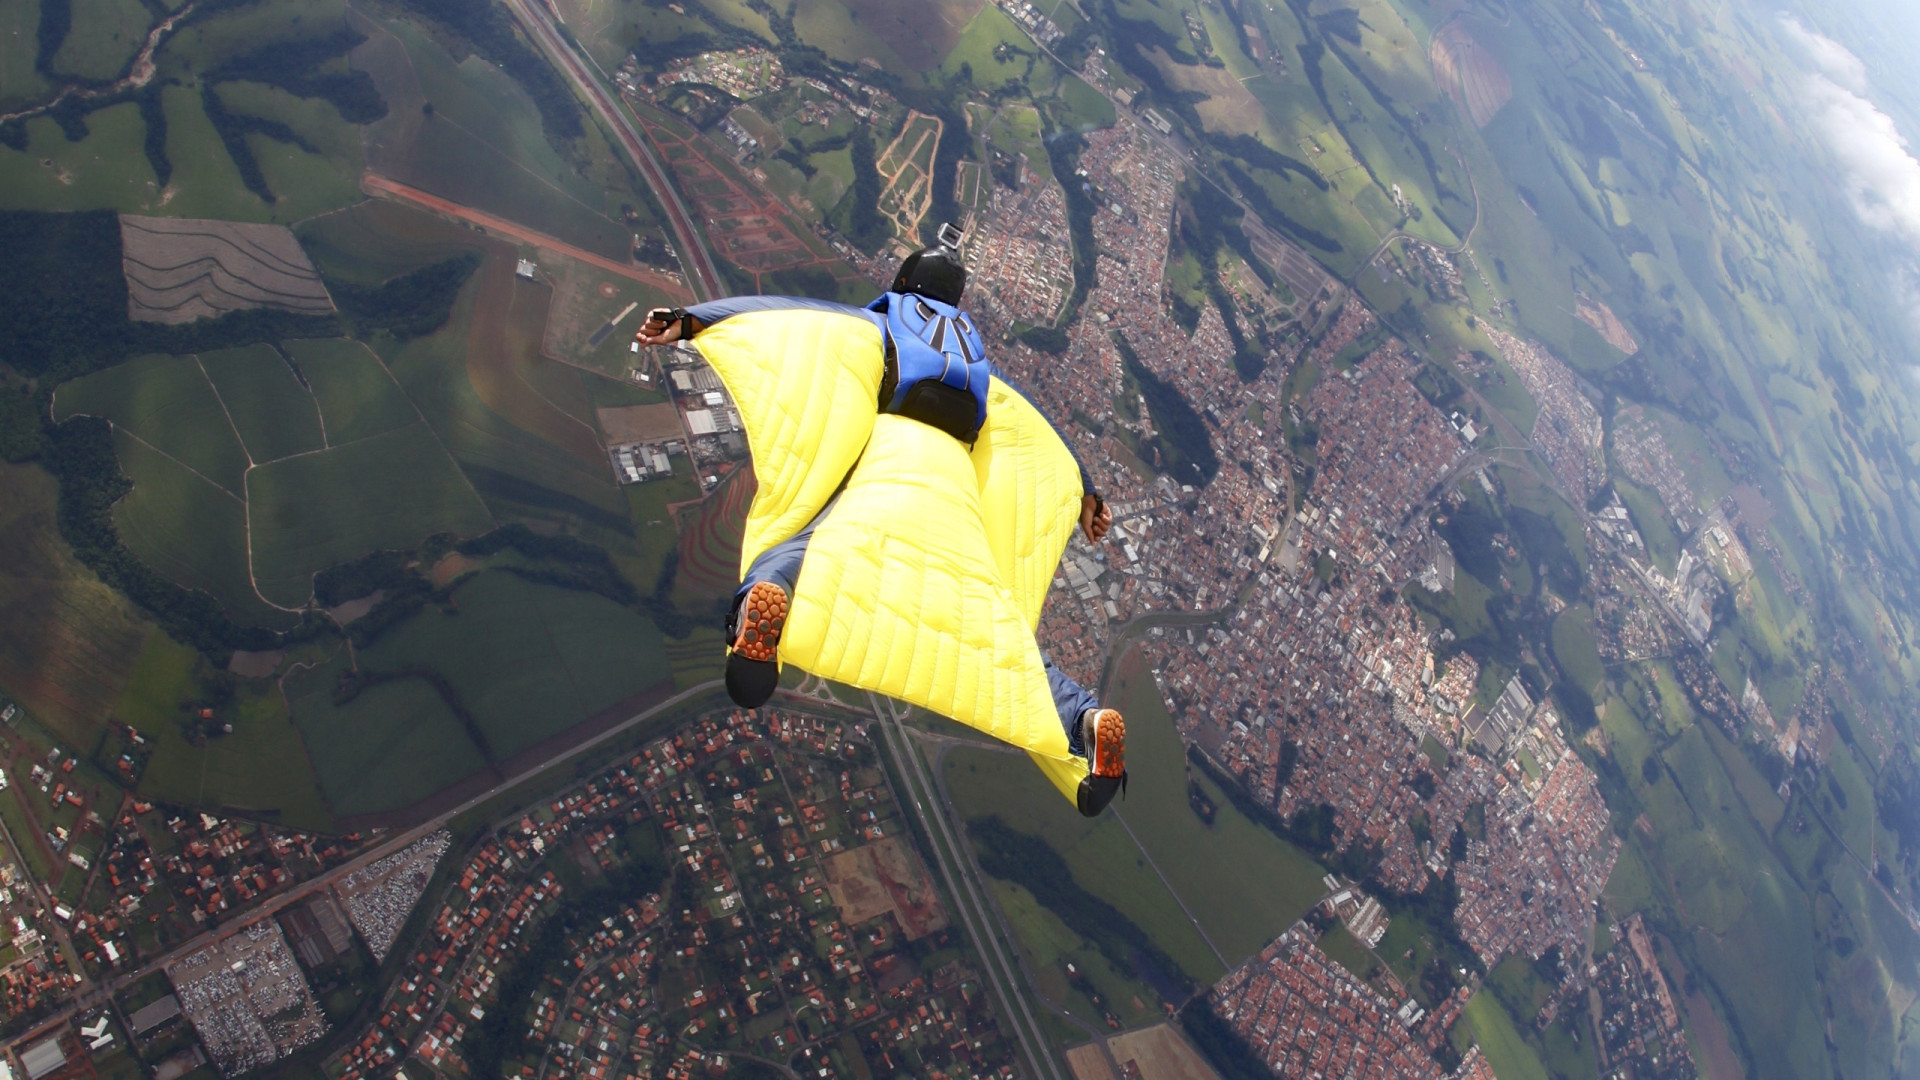 Paraquedista brasileiro morre durante salto nos EUA